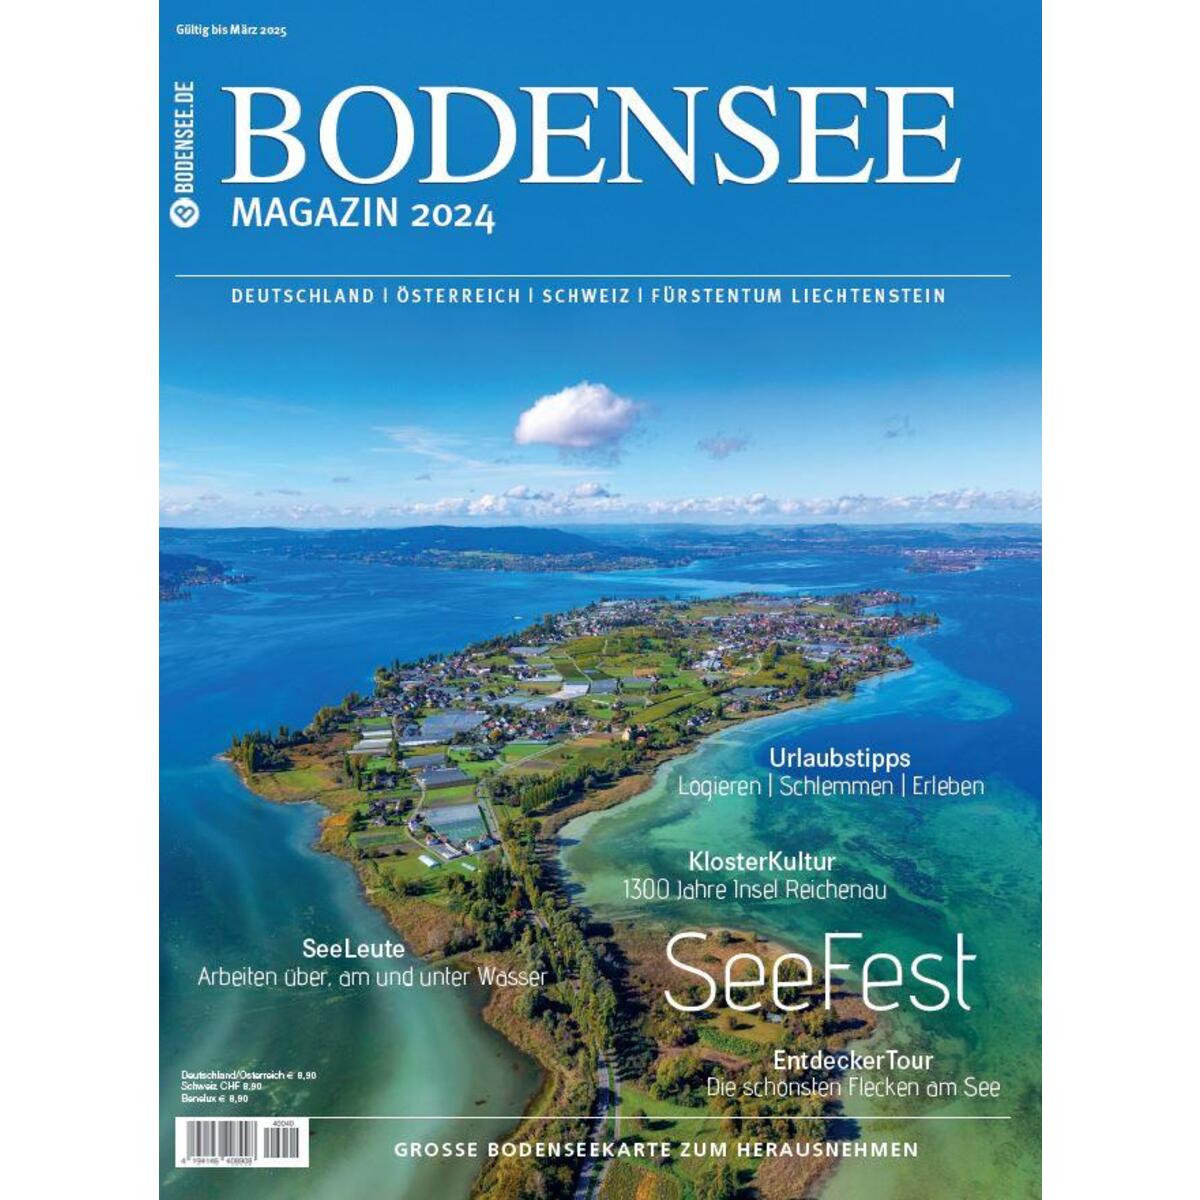 Bodensee Magazin 2024 von Thorbecke Jan Verlag